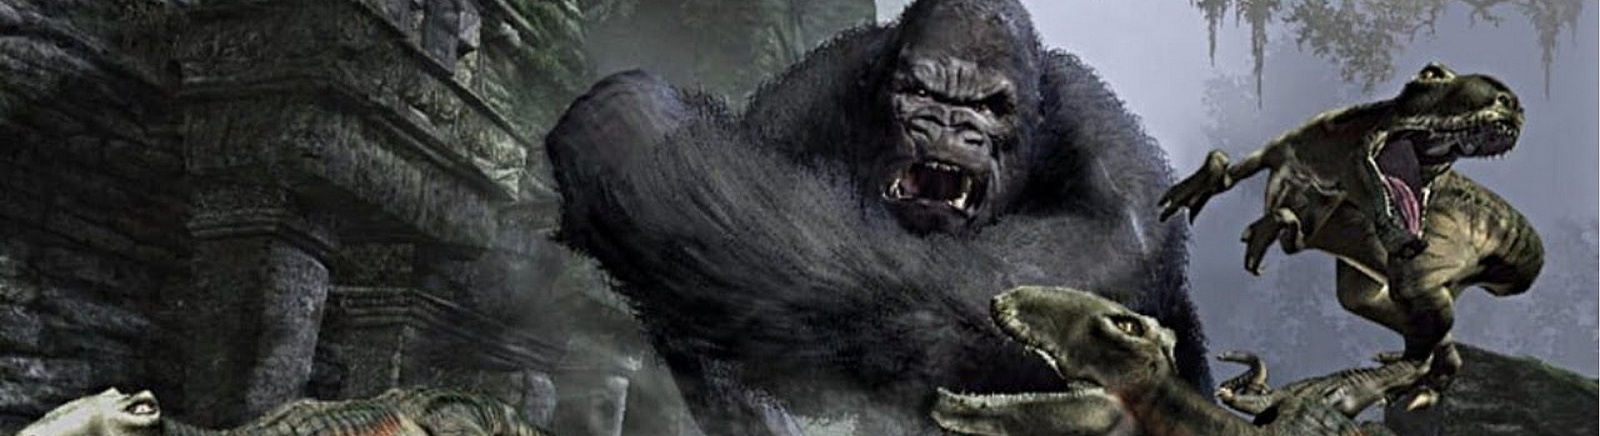 Дата выхода Peter Jackson's King Kong: The Official Game of the Movie (2005)  на PC, PS2 и Xbox 360 в России и во всем мире